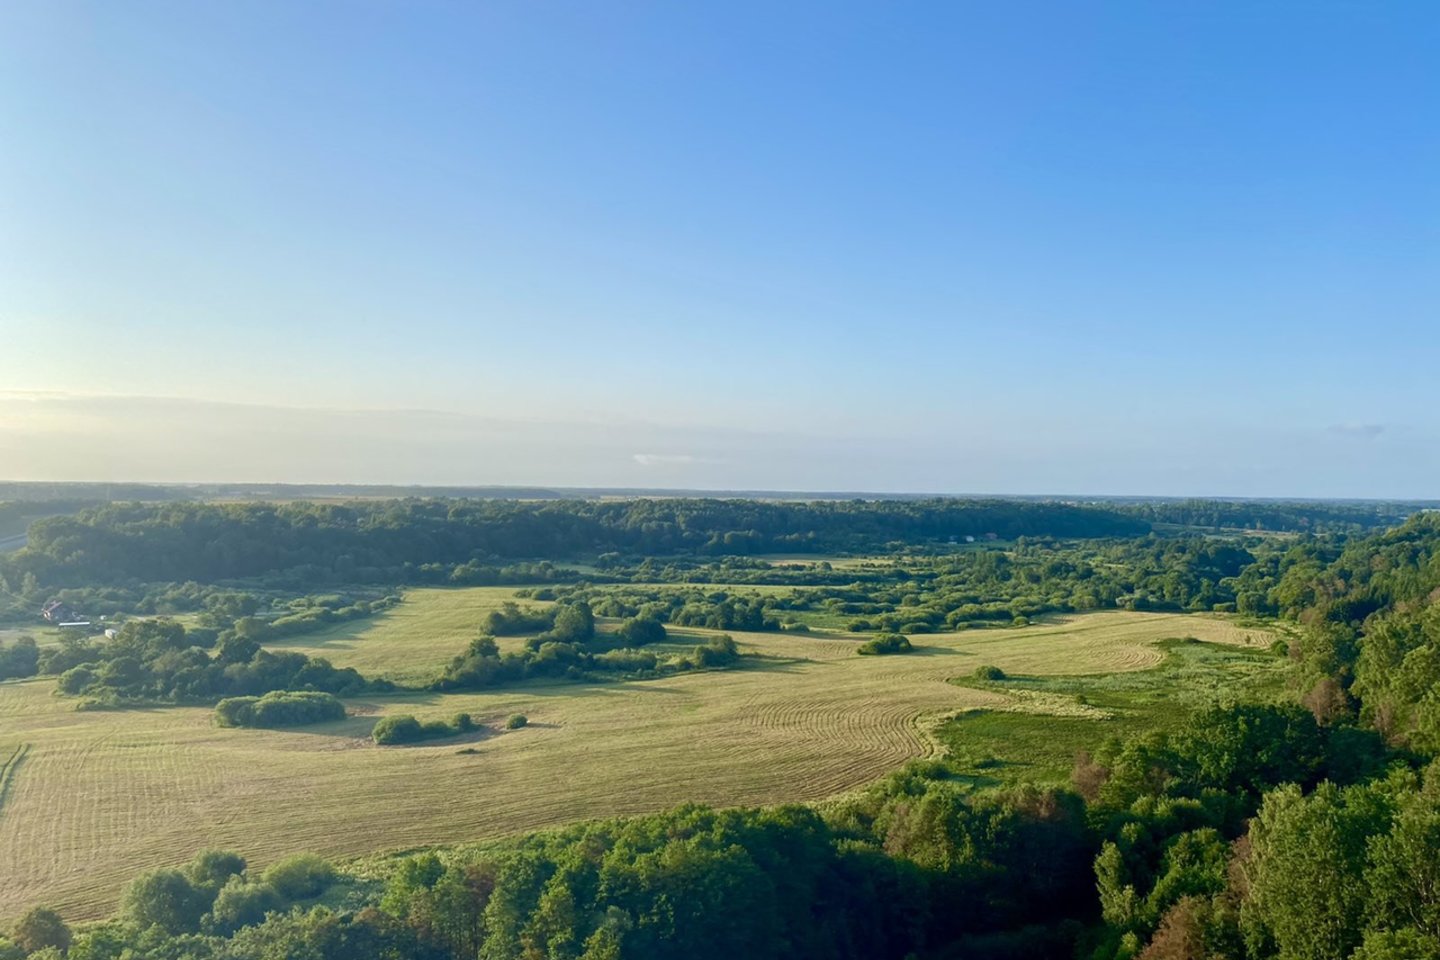 Tikrai verta atsikelti anksti ryte tam, kad skrendant oro balionu galėtum pamatyti visą Lietuvos pajūrį.